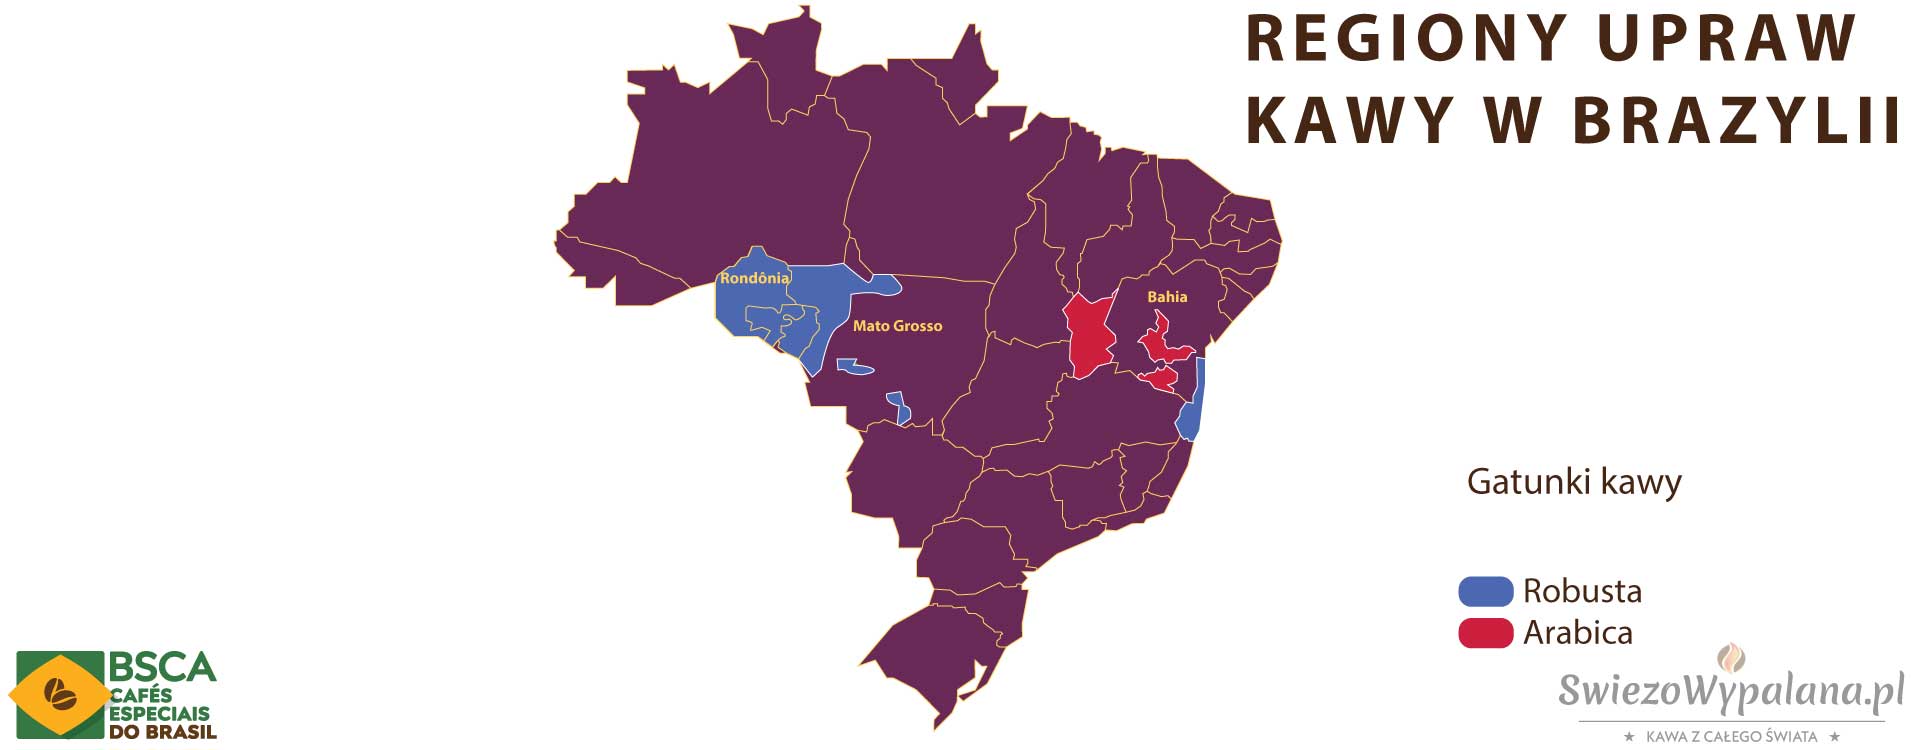 Regiony upraw kawy w Brazylii